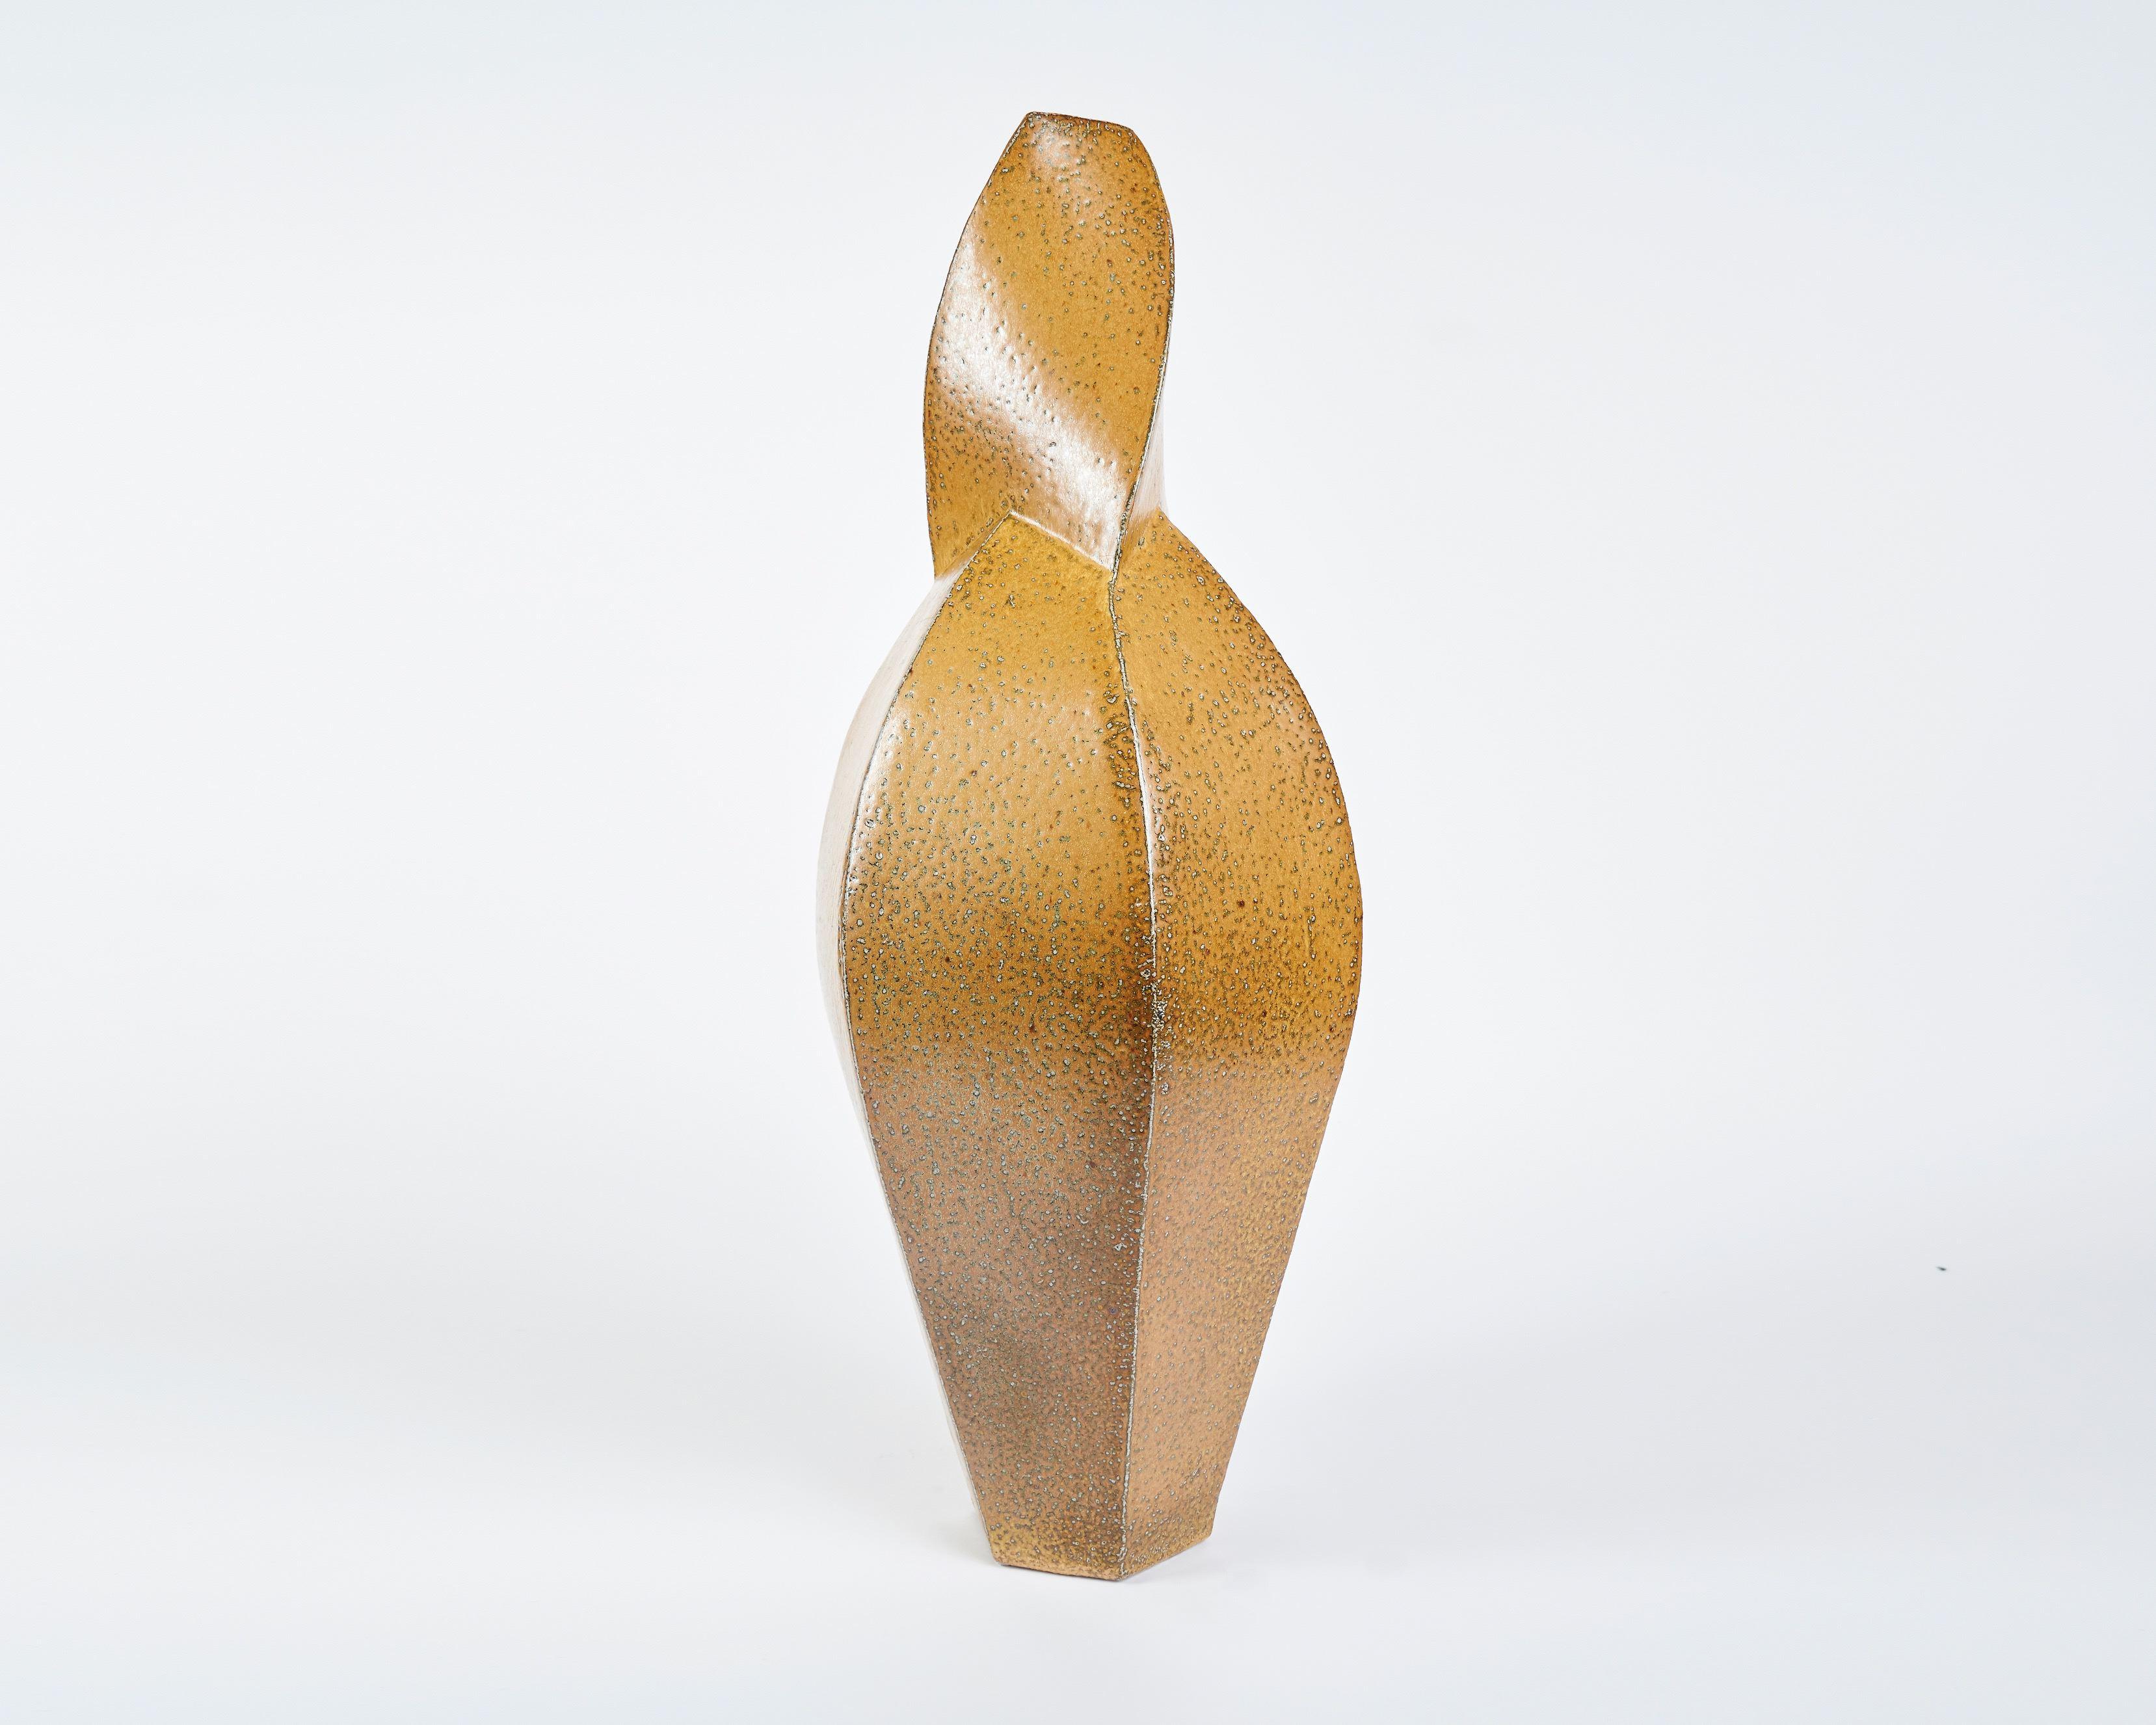 Ce vase torsadé et à facettes du céramiste danois contemporain Aage Birck possède une rigidité et une texture uniques pour ce médium.